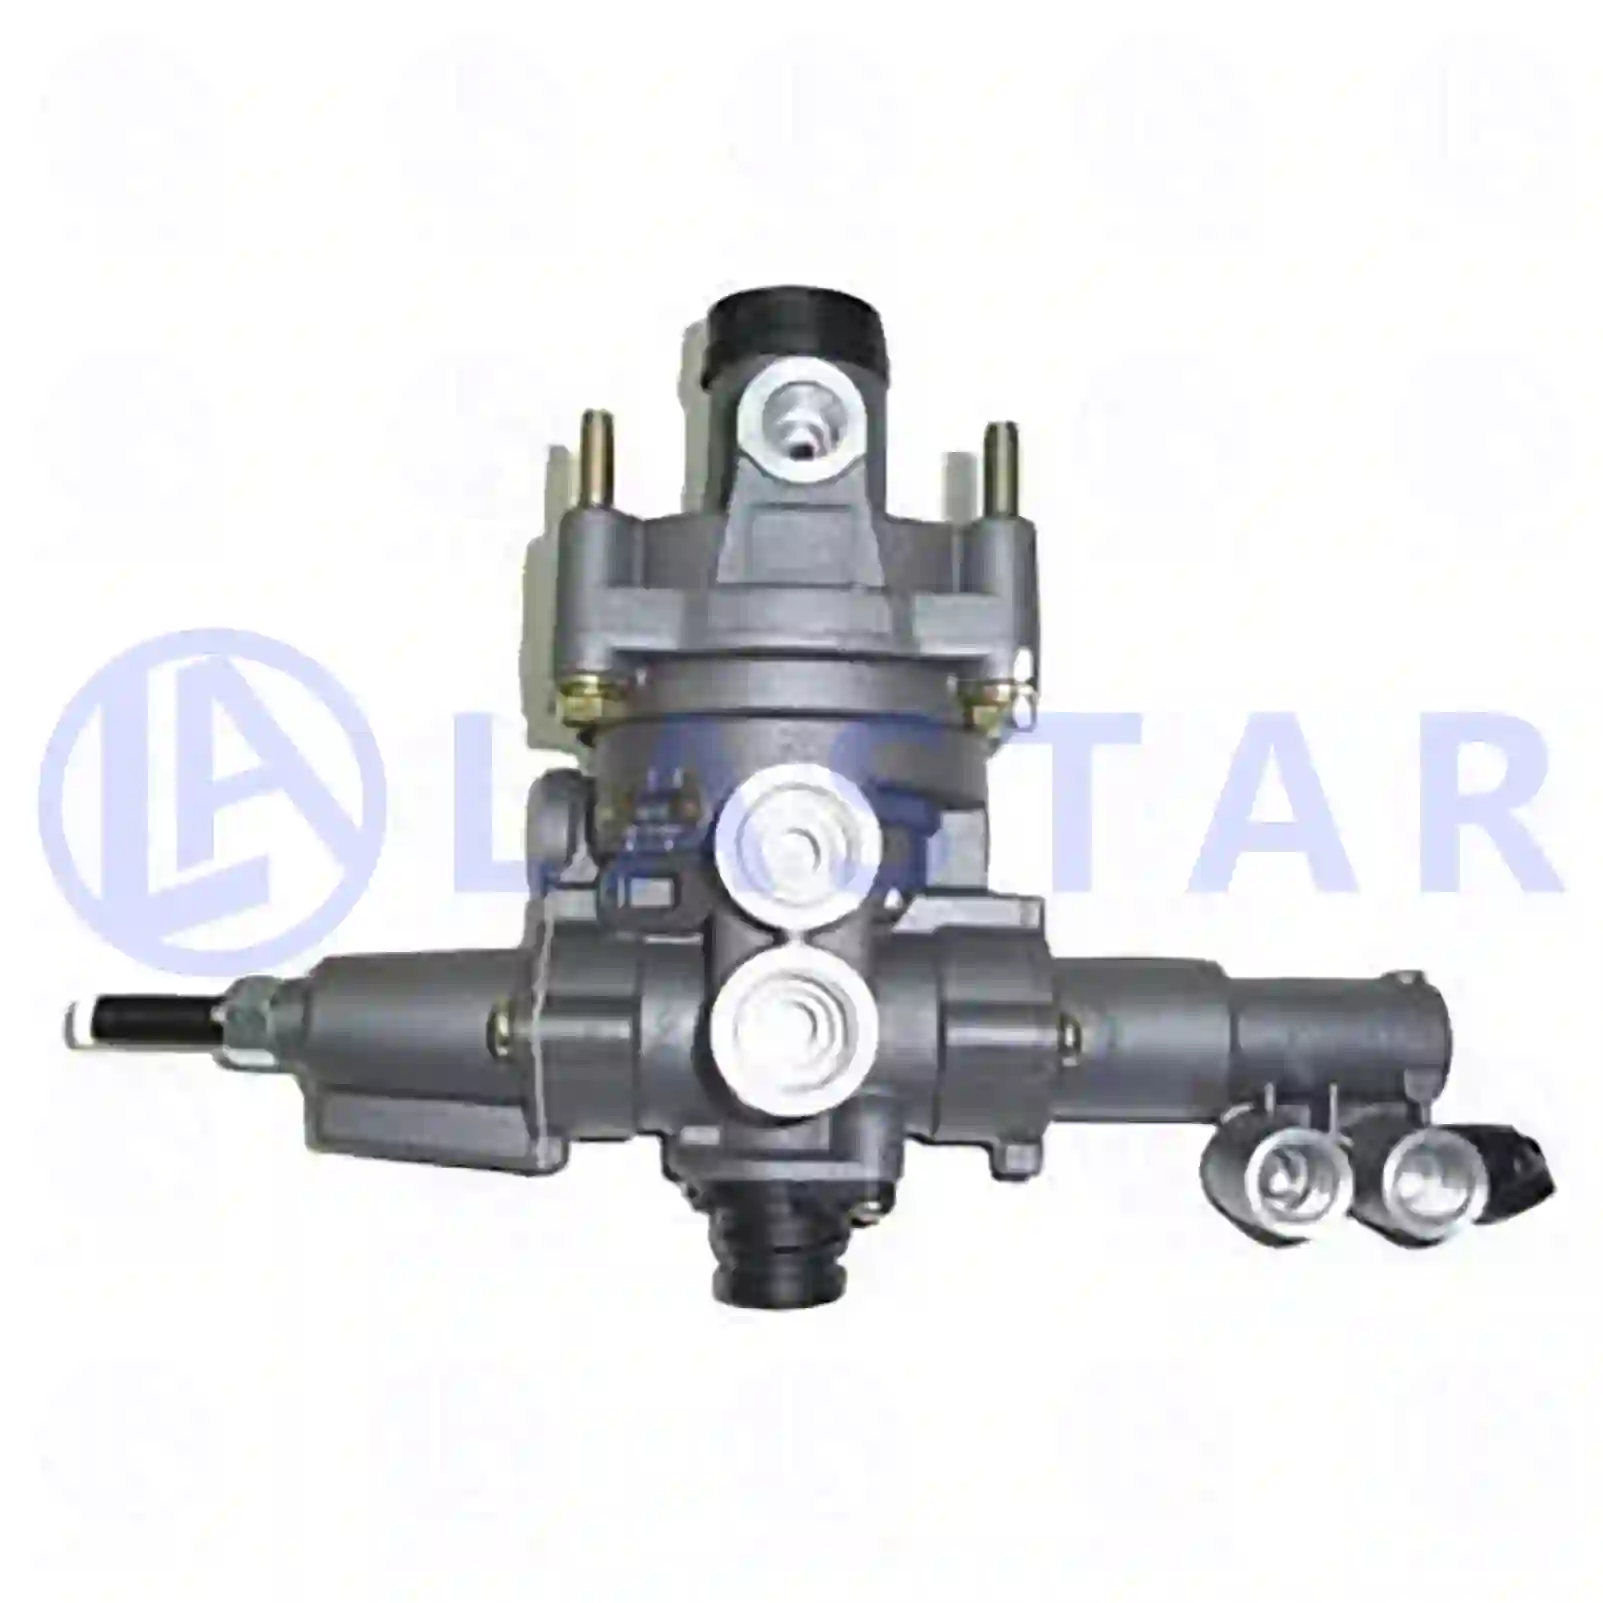  Load sensitive valve || Lastar Spare Part | Truck Spare Parts, Auotomotive Spare Parts